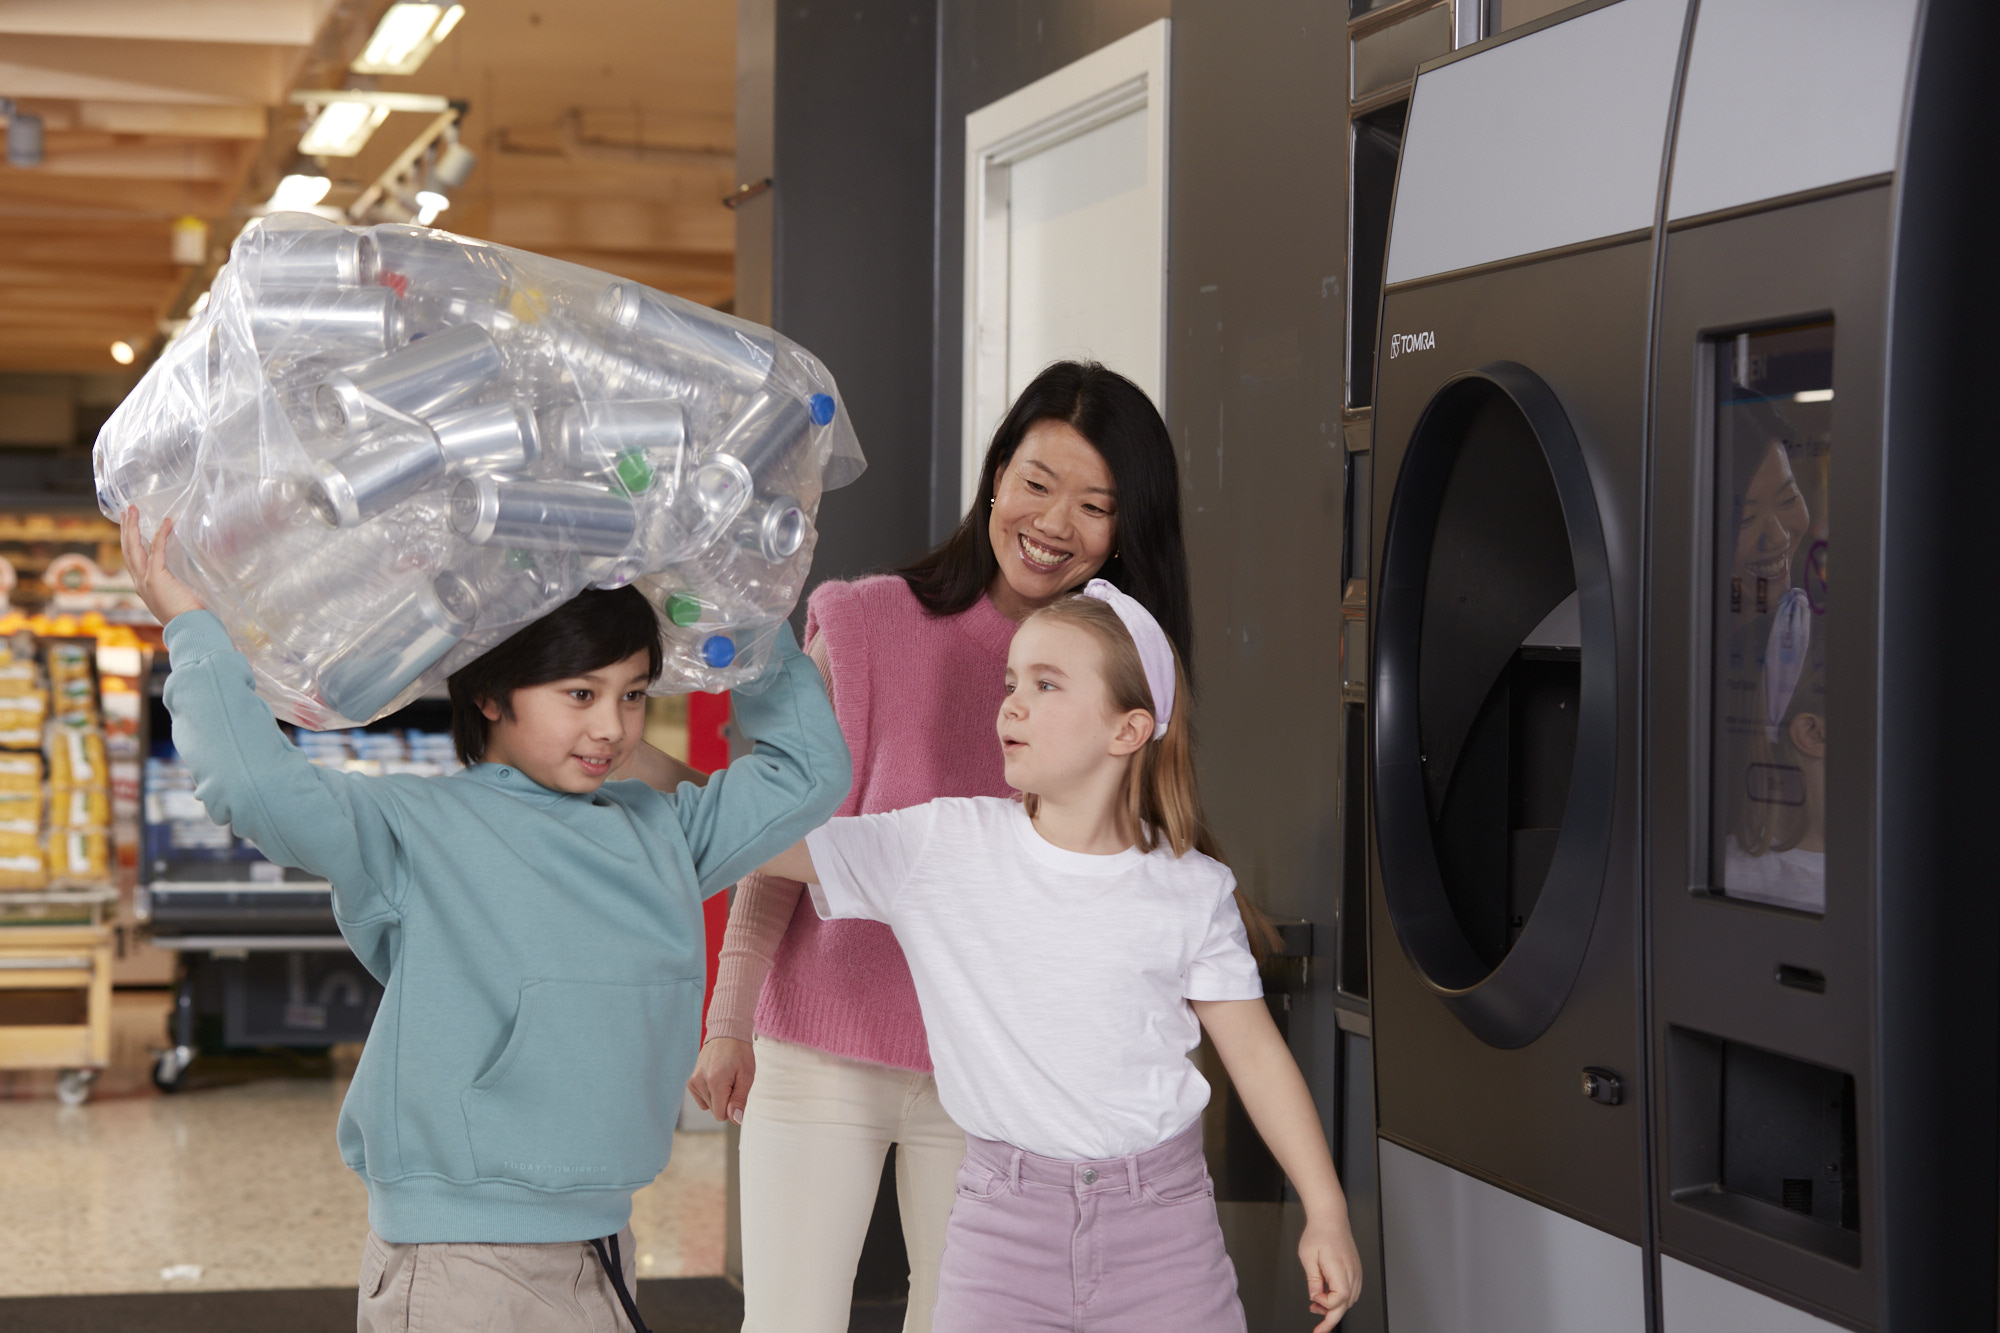 Imagen de niños y adultos reciclando en una máquina de vending inverso